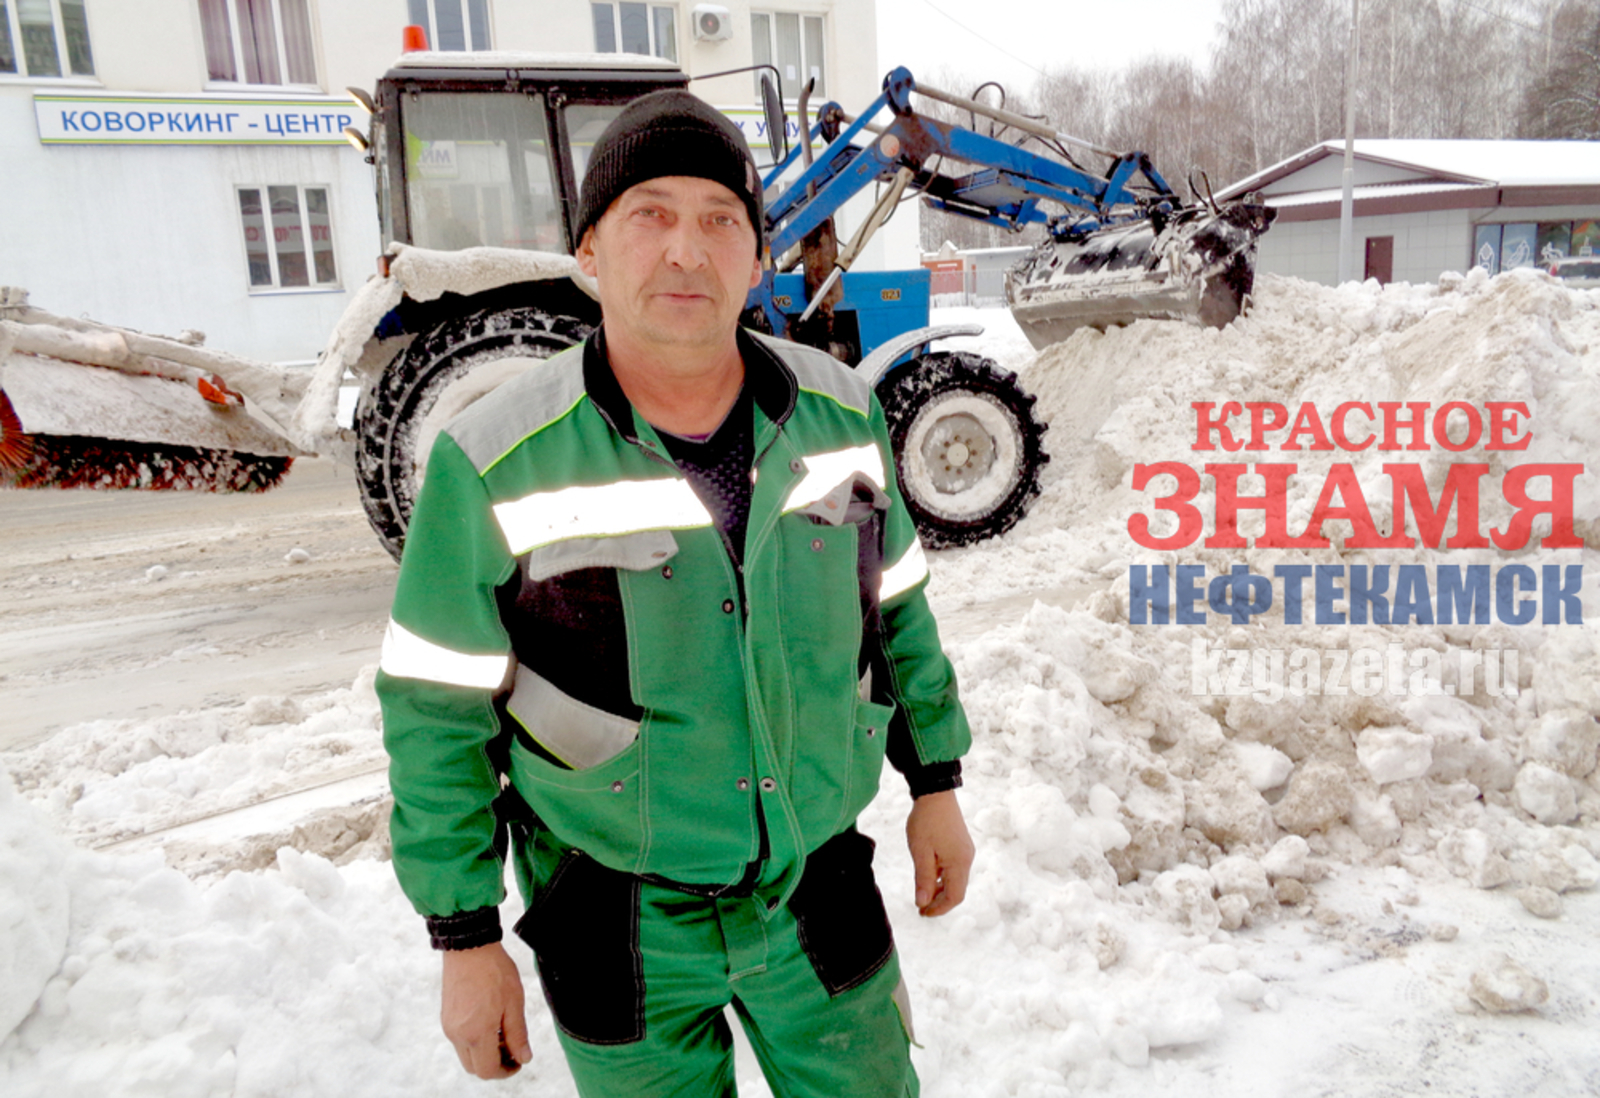 Наиль Фахреев, «КЗ».  Вениамин Атыпов снегоочисткой Нефтекамска занимается уже 34 года, с тех пор как поступил в РСУ ДОР. В воскресенье он в том числе убирал снег возле «умной» остановки на центральной площади.